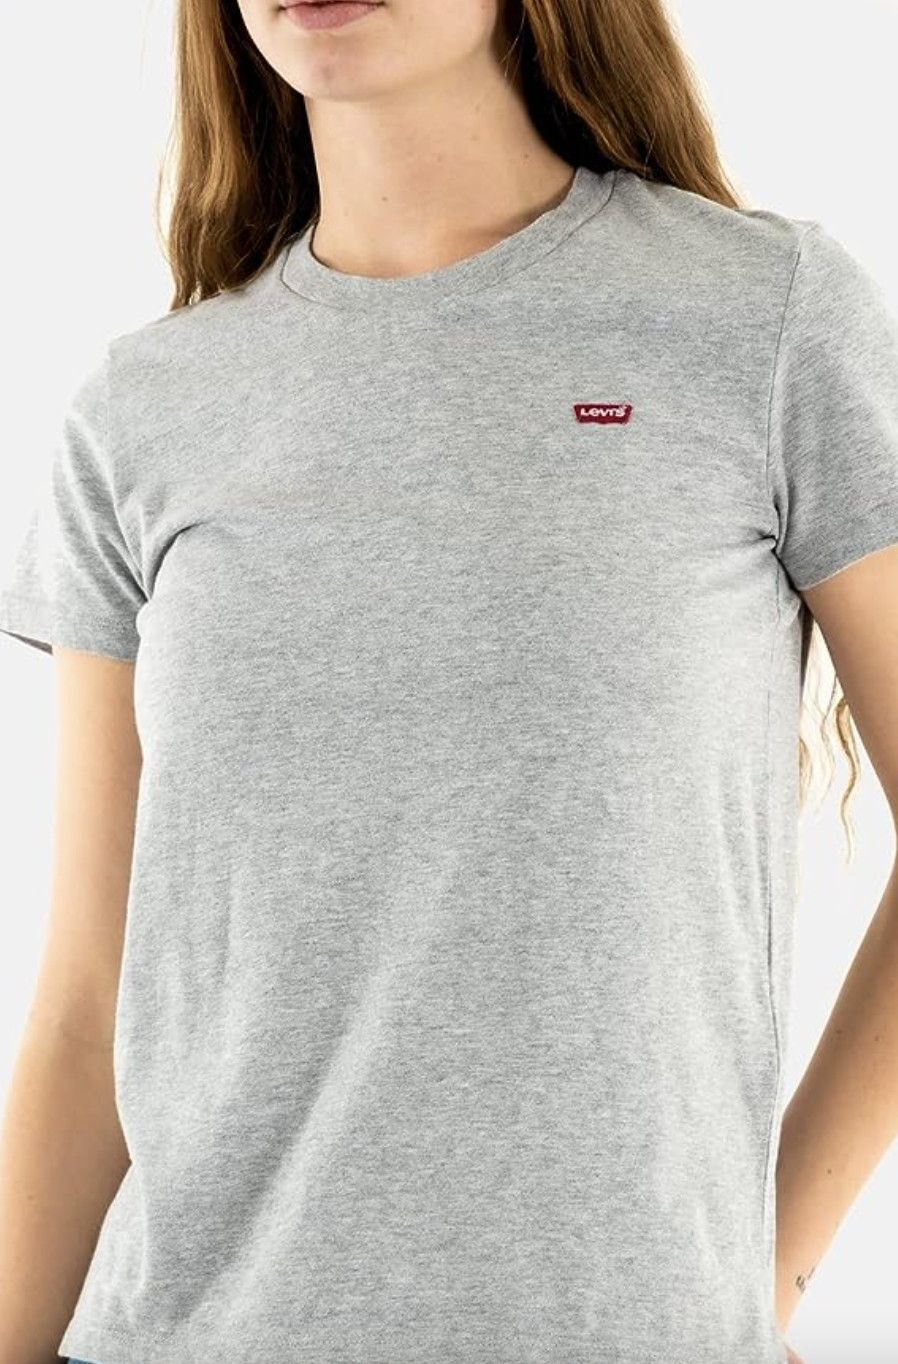 camiseta de algodón en color gris de levi's para amazon